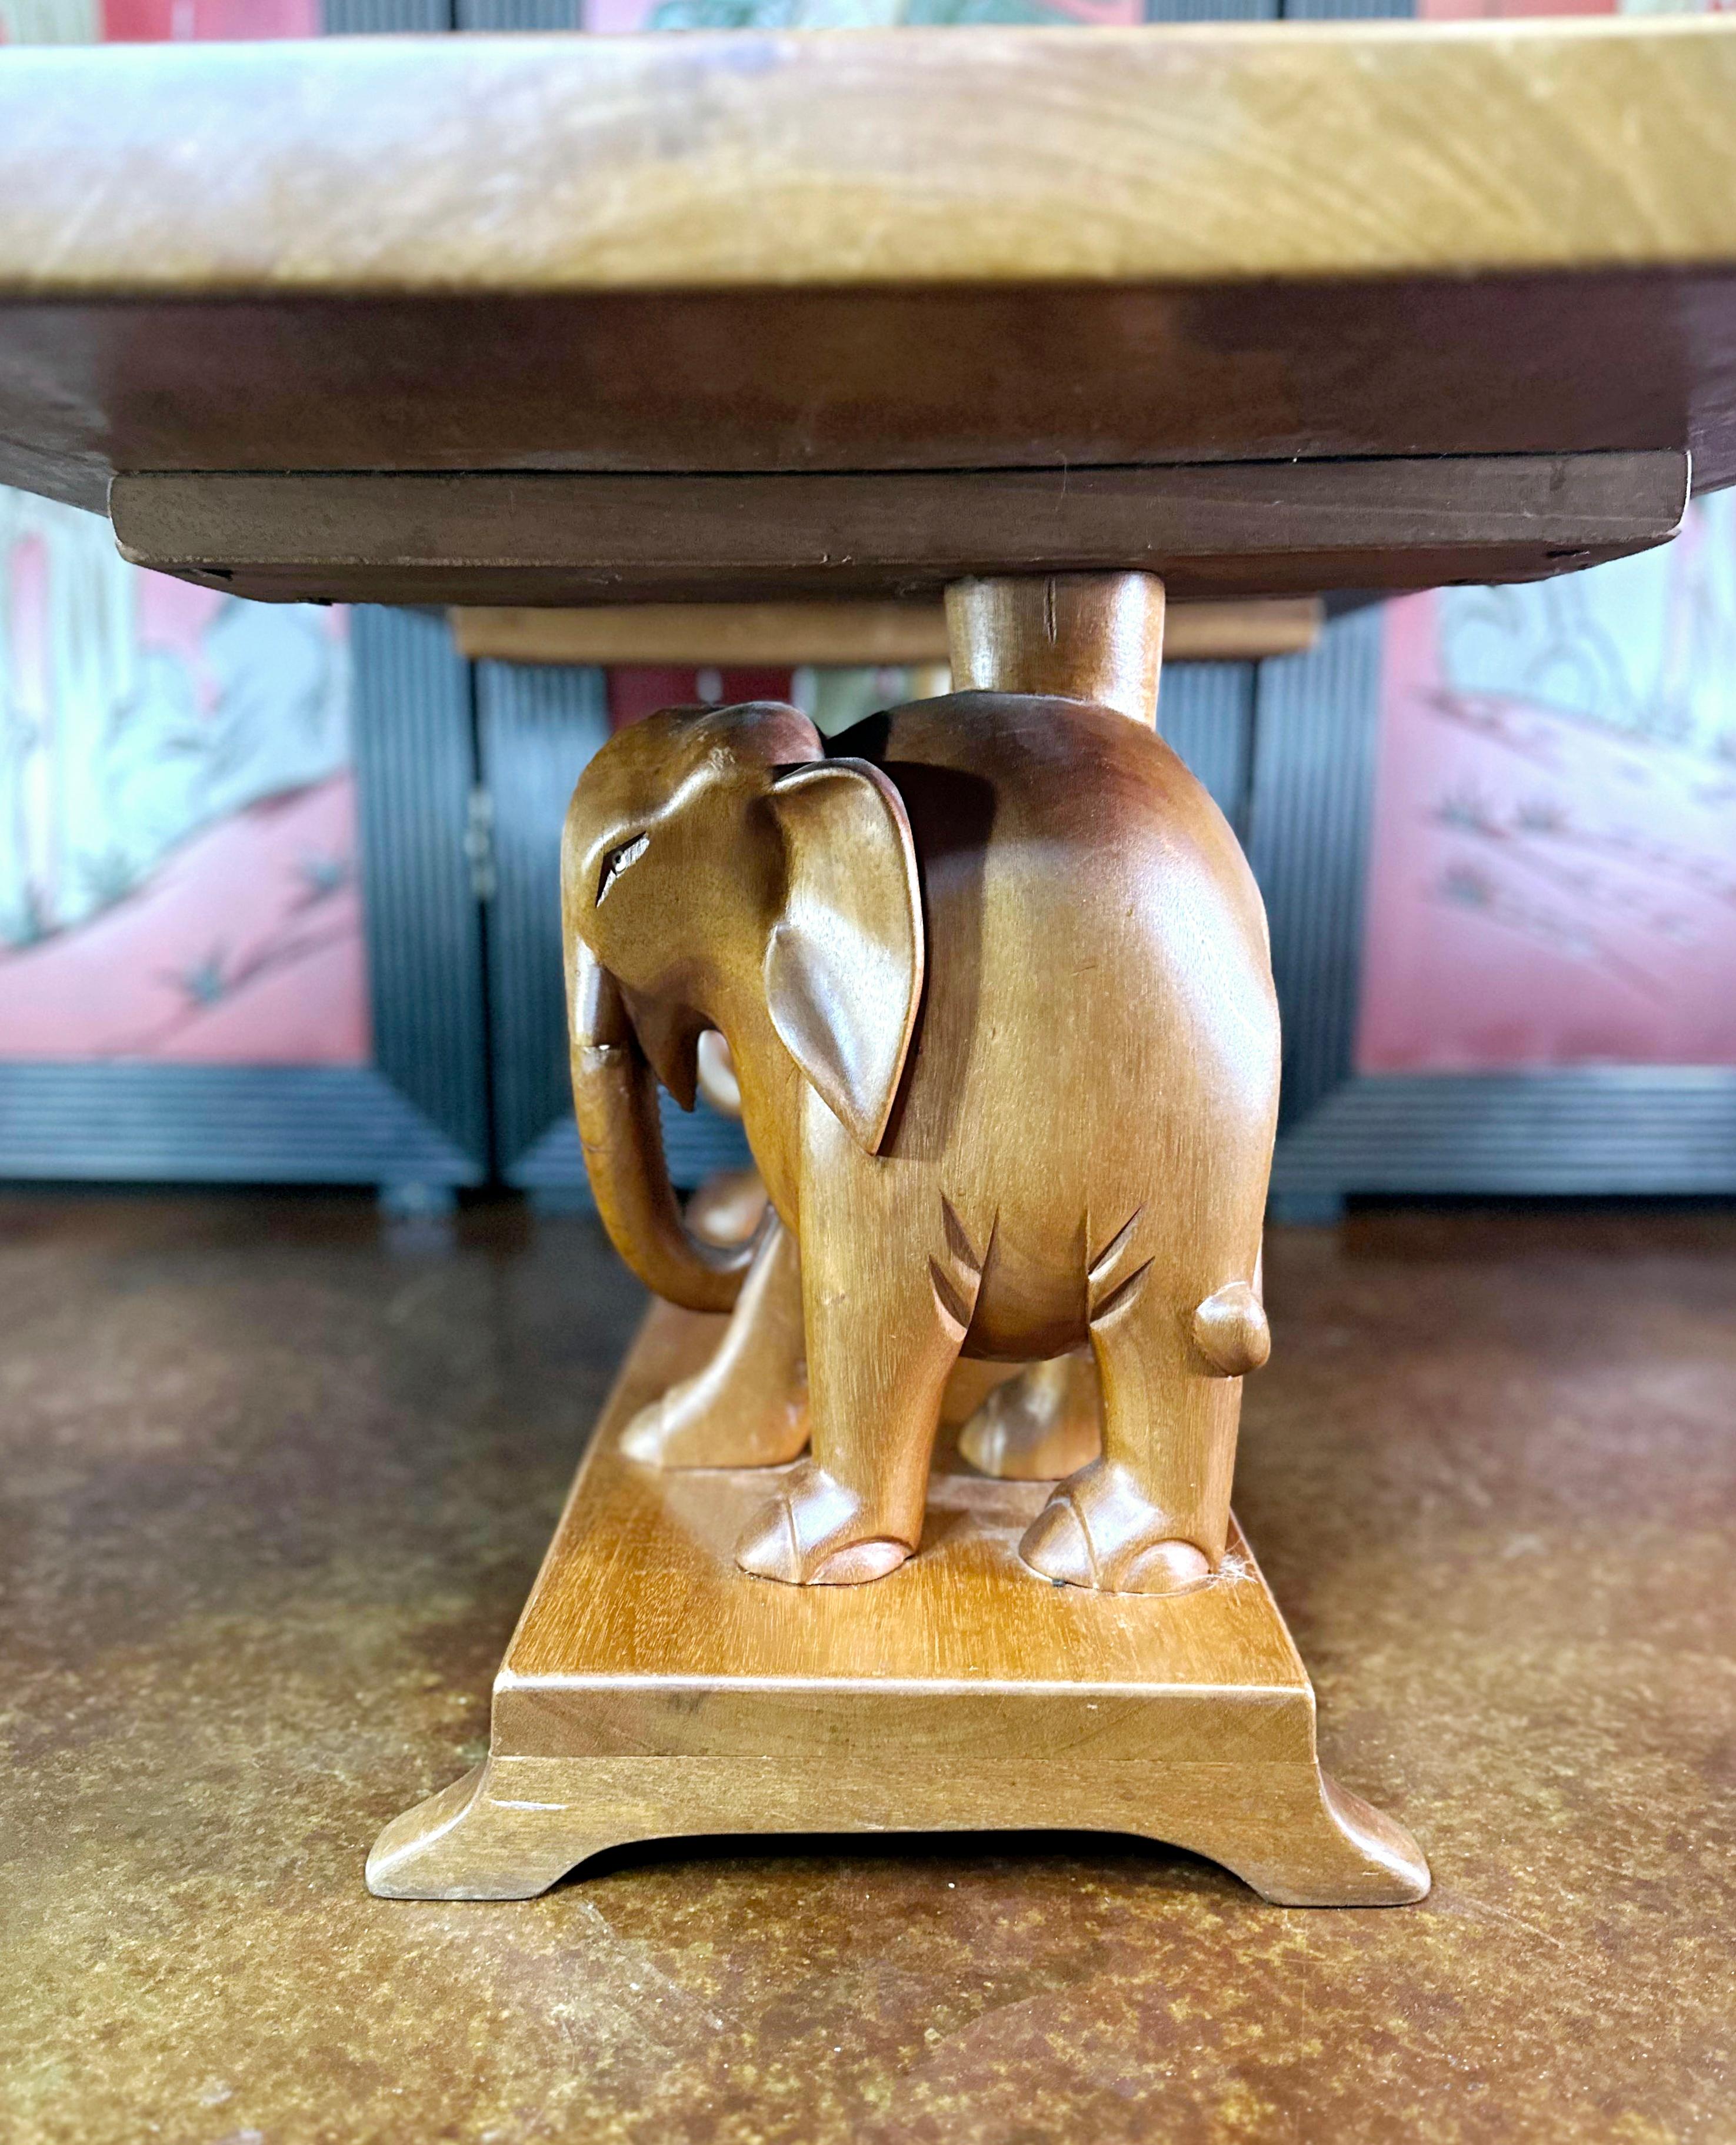 Dies ist ein dekorativer Vintage Couchtisch. Asiatischer Beistelltisch aus Mahagoni mit Elefantenfiguren, aus der späten Art Déco-Periode, um 1940.

Ein charaktervolles und farbenfrohes Produkt für das Wohnzimmer oder jeden anderen Raum. 
Zeigt eine